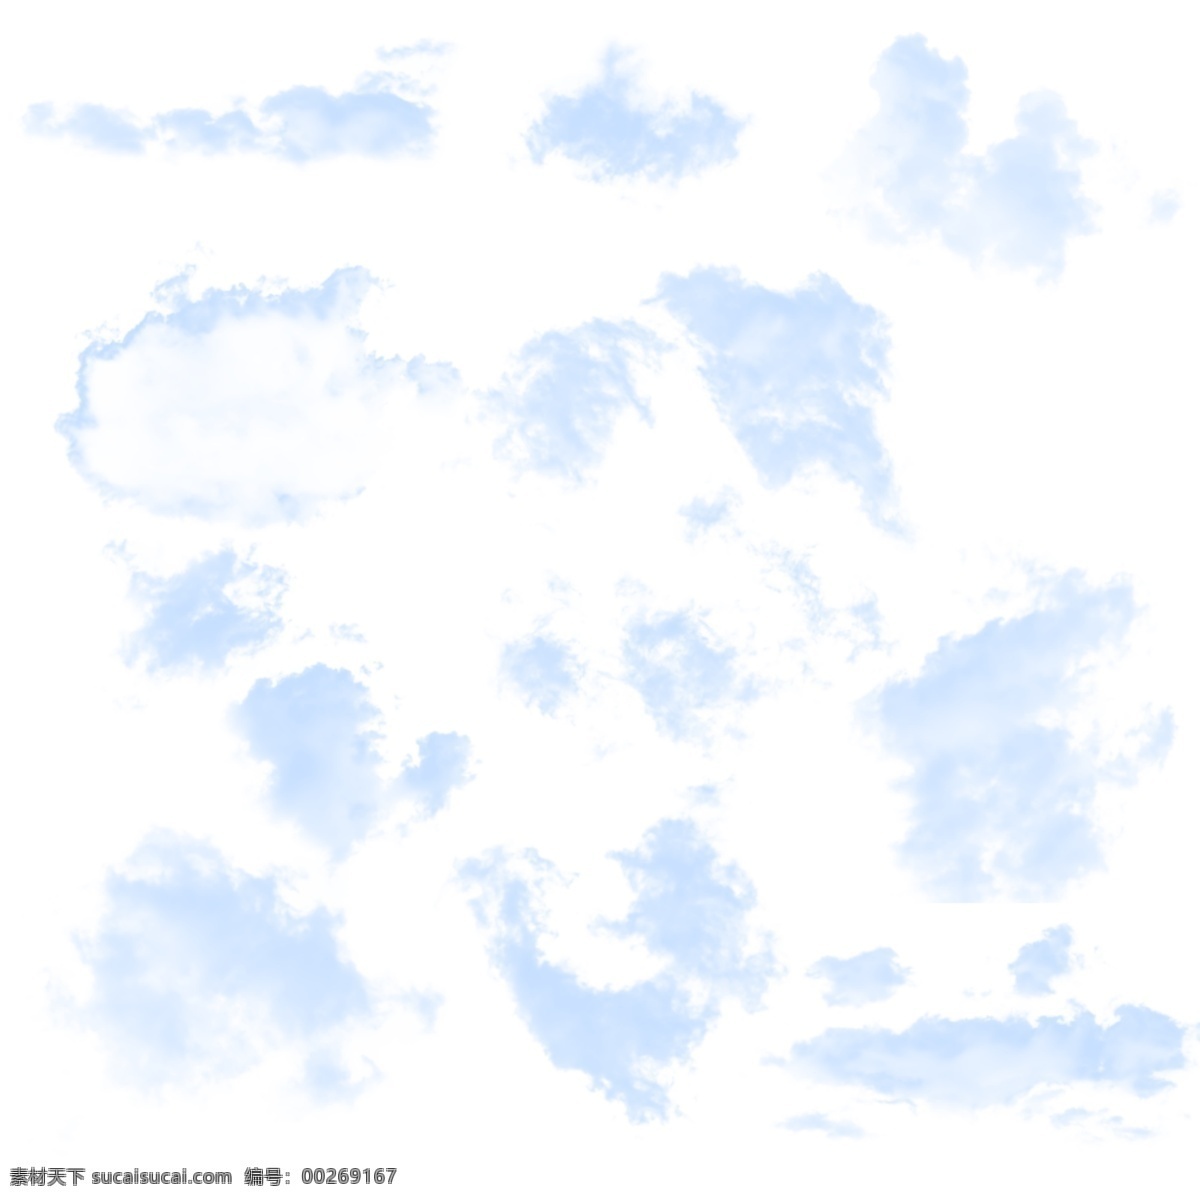 云 云彩 蓝色云彩 蓝色 蓝 很多云彩 透明图片 云彩素材 云素材